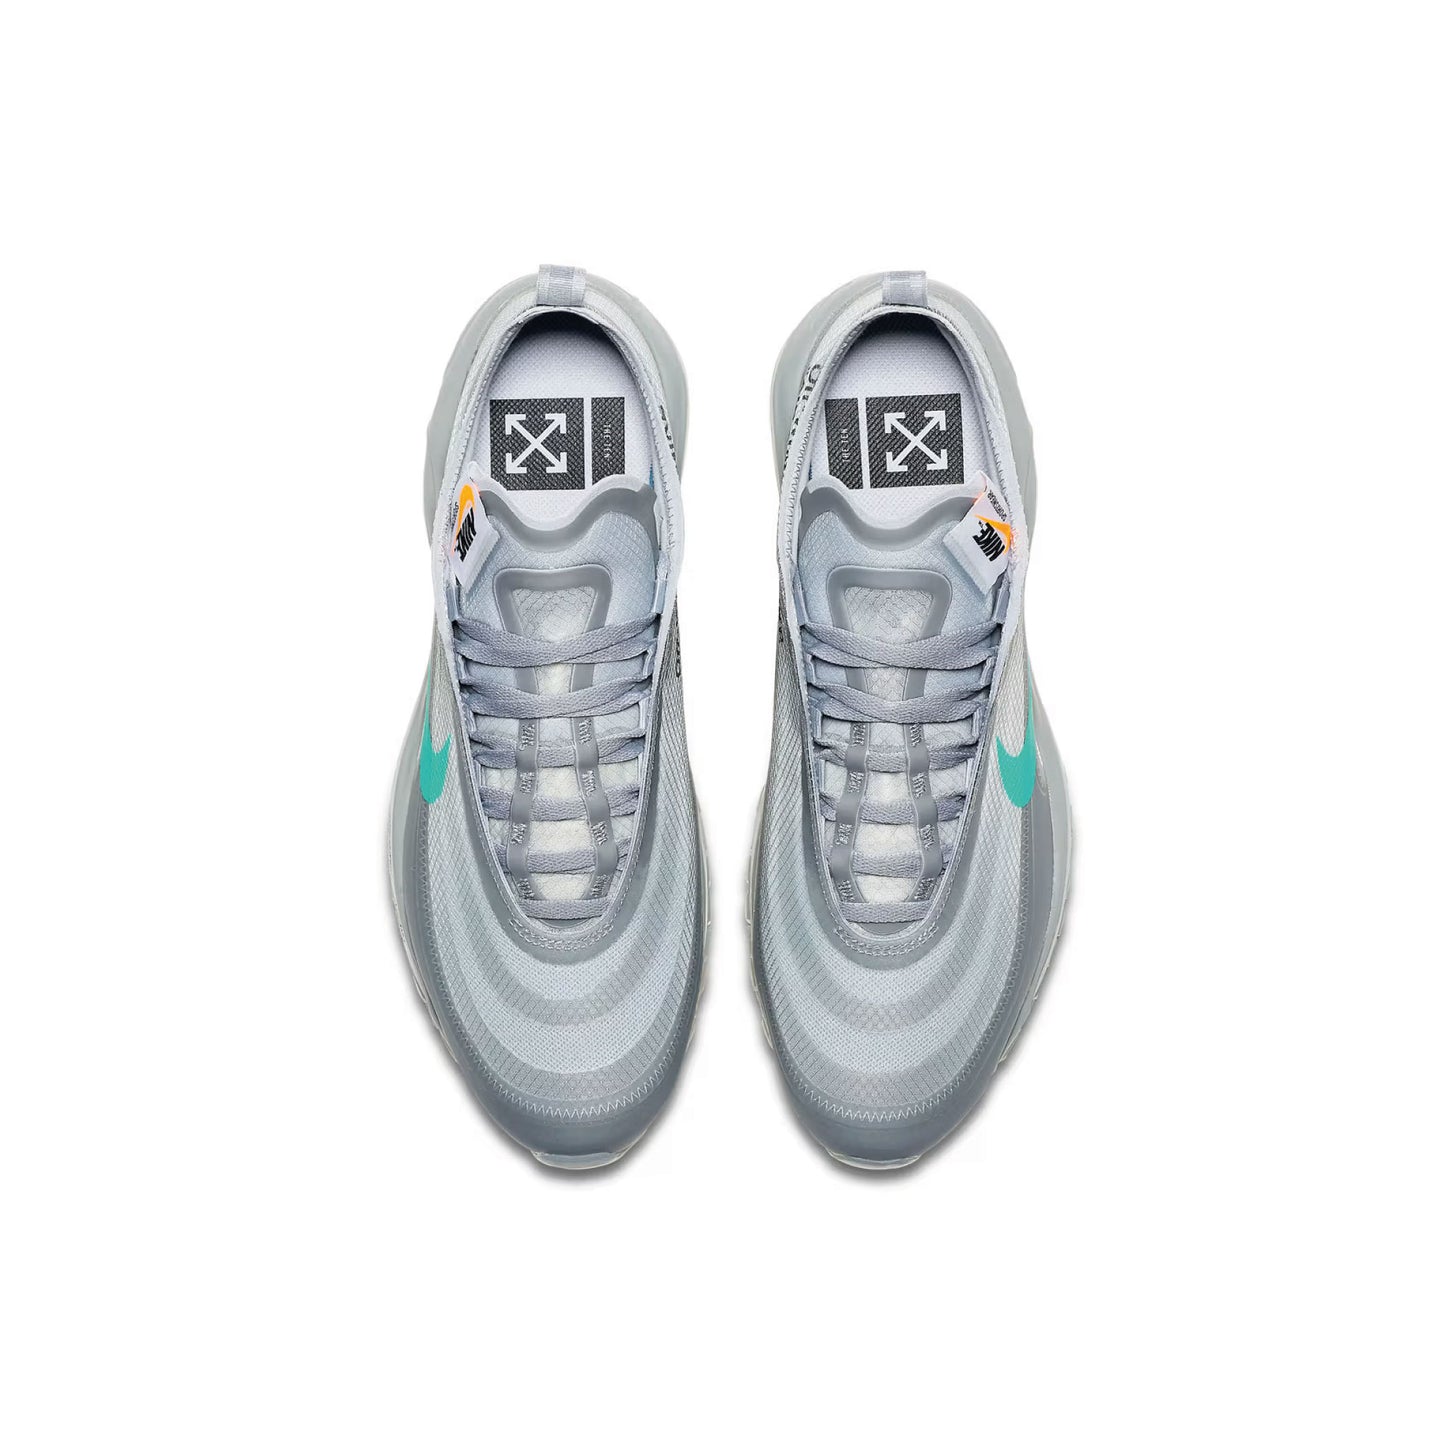 Nike x Off-White Air Max 97 'Menta' - 48h